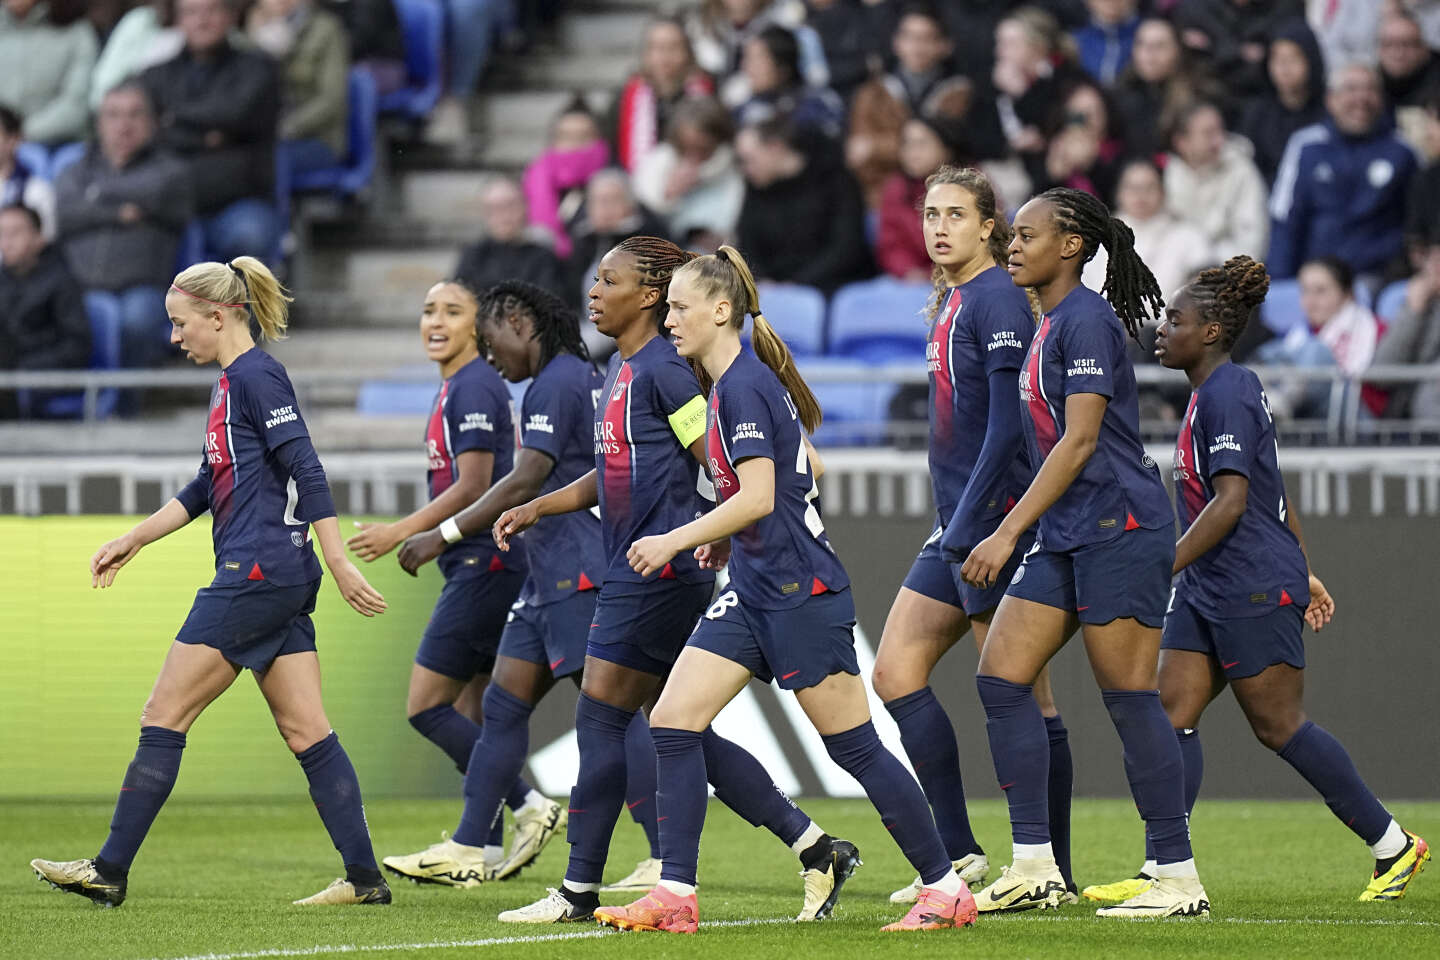 PSG narrowly eliminates Paris FC to reach D1 women’s final